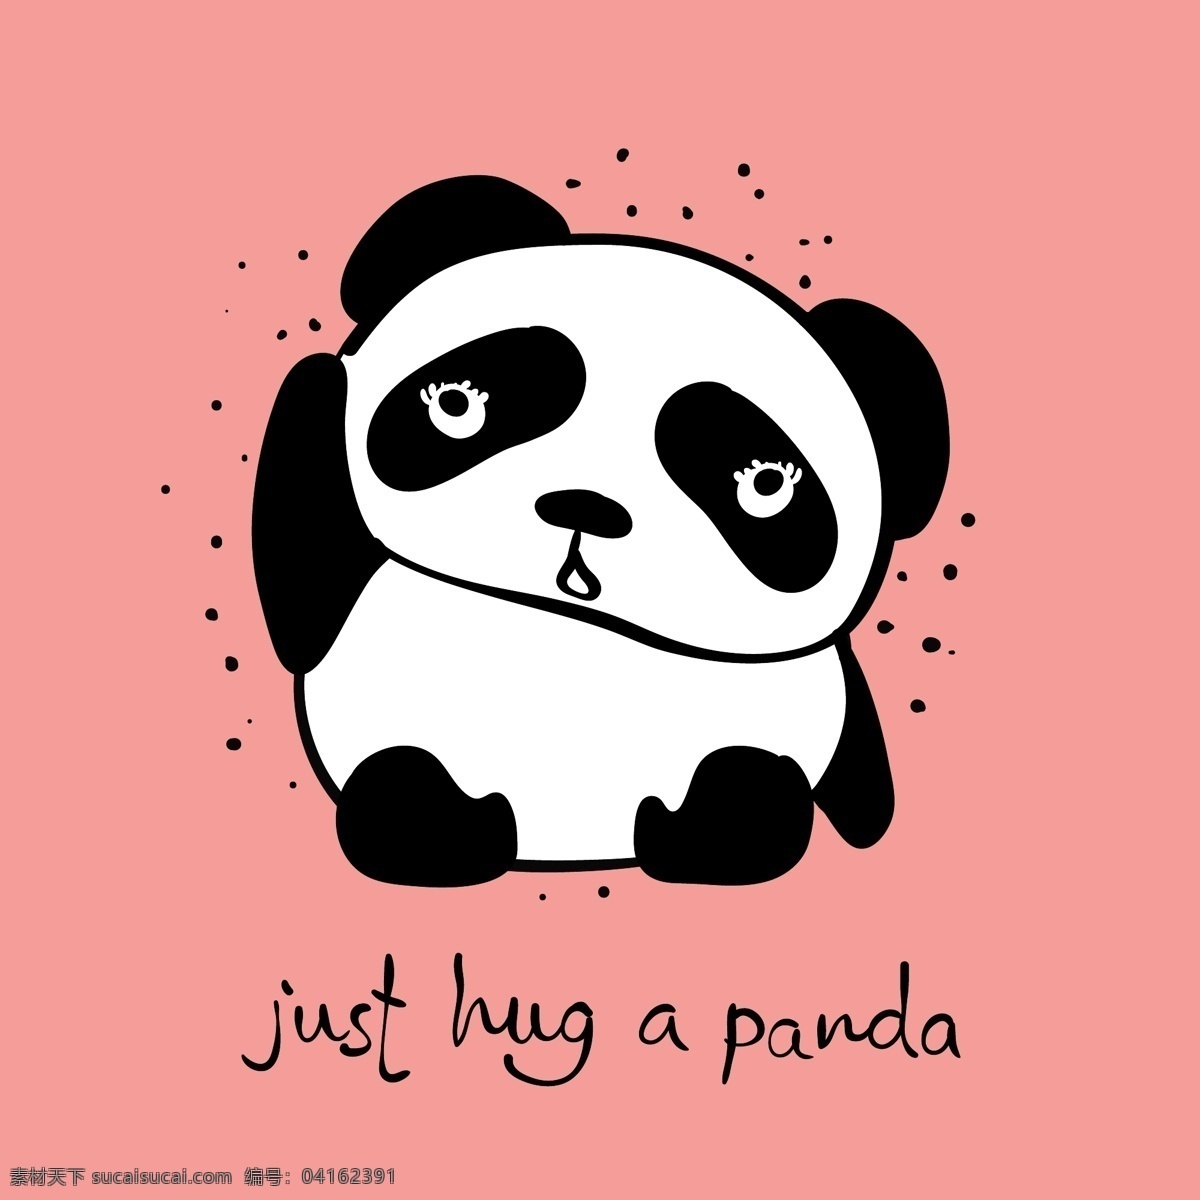 疑惑 熊猫 卡通 动物 粉色 黑白 平面素材 设计素材 生活 矢量素材 温暖 艺术